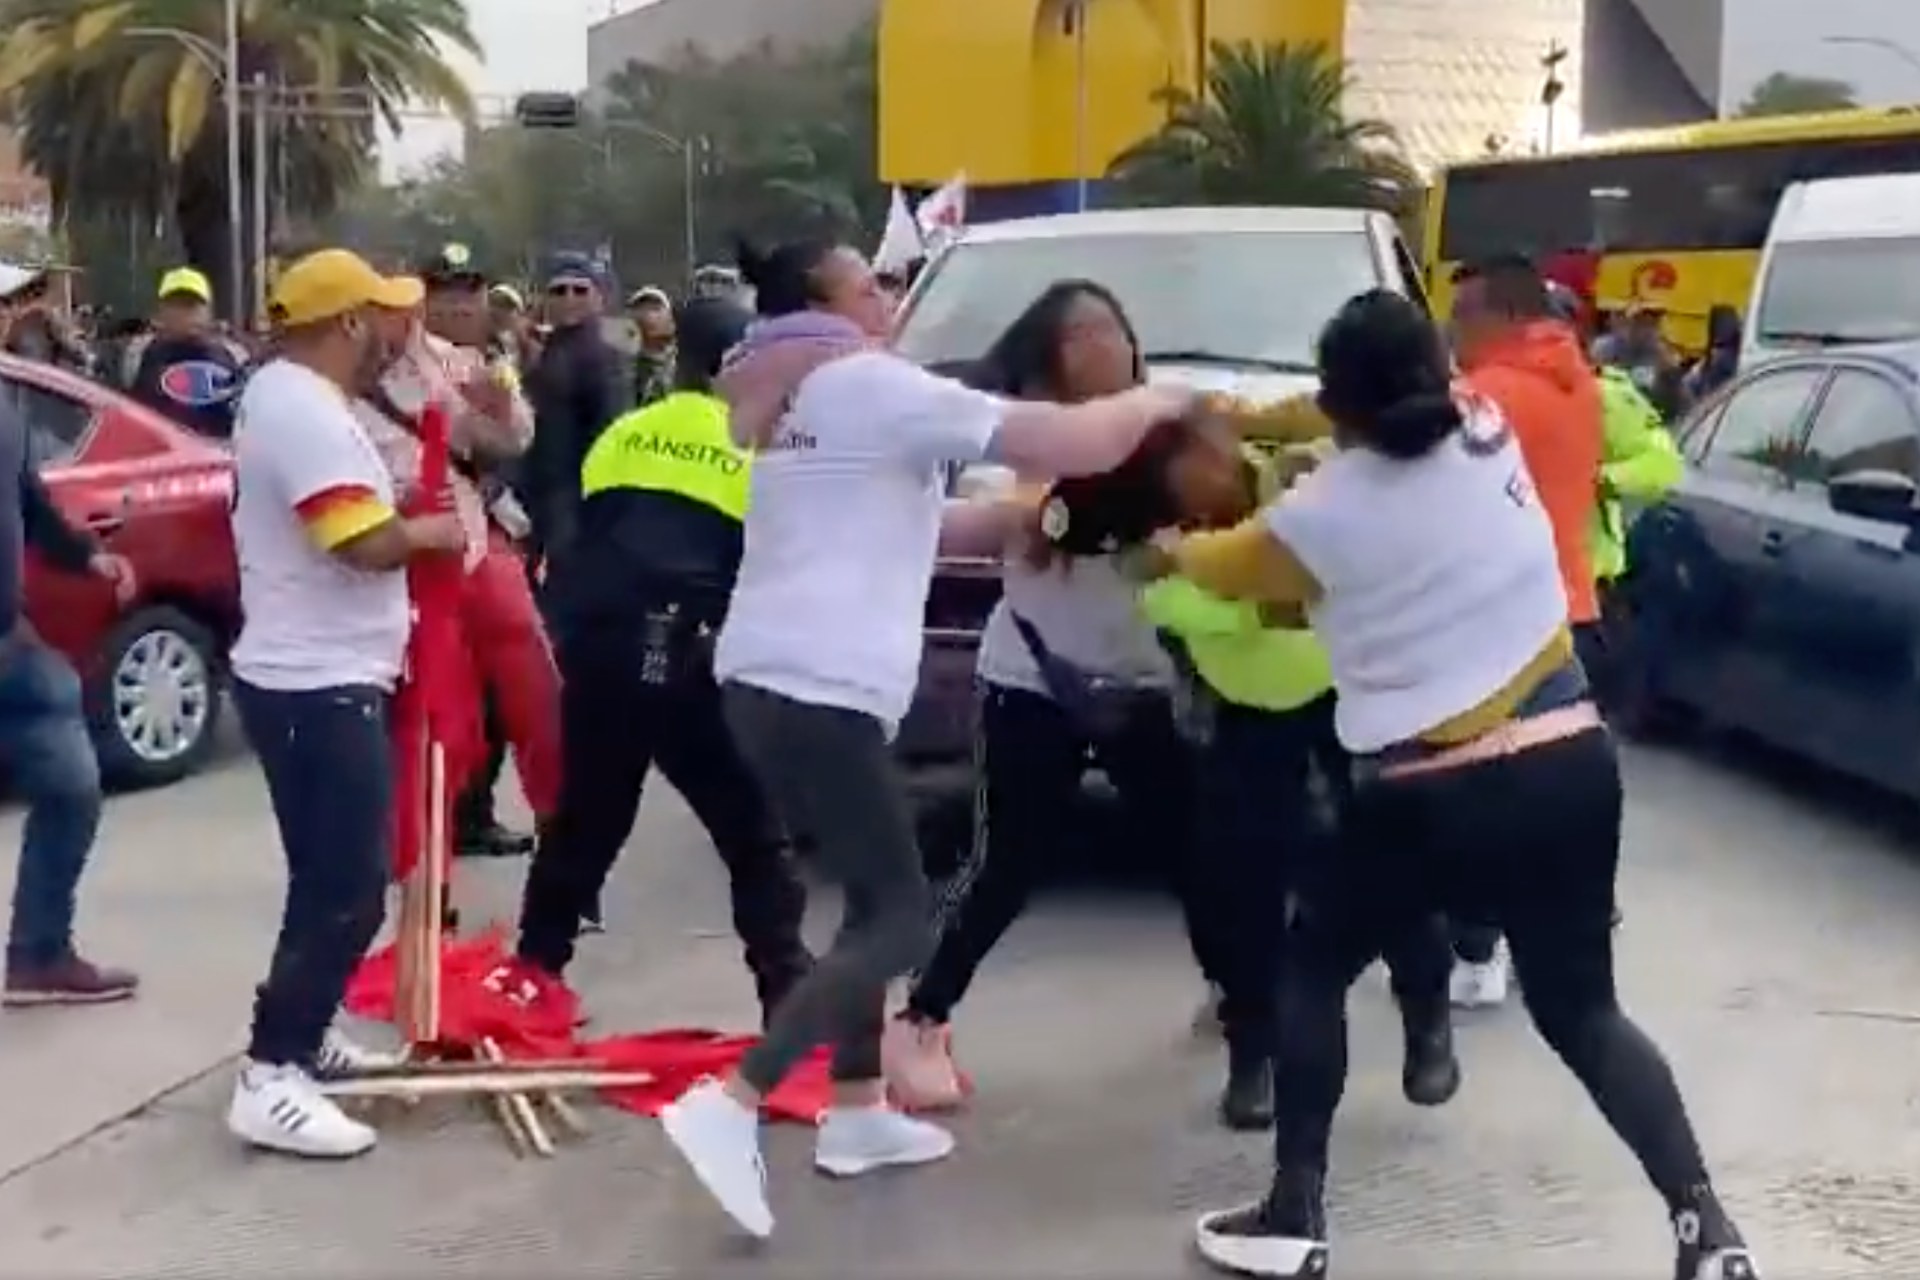 Mujeres golpean a policías durante cierre de gira Sheinbaum; la violenta escena fue grabada en video.